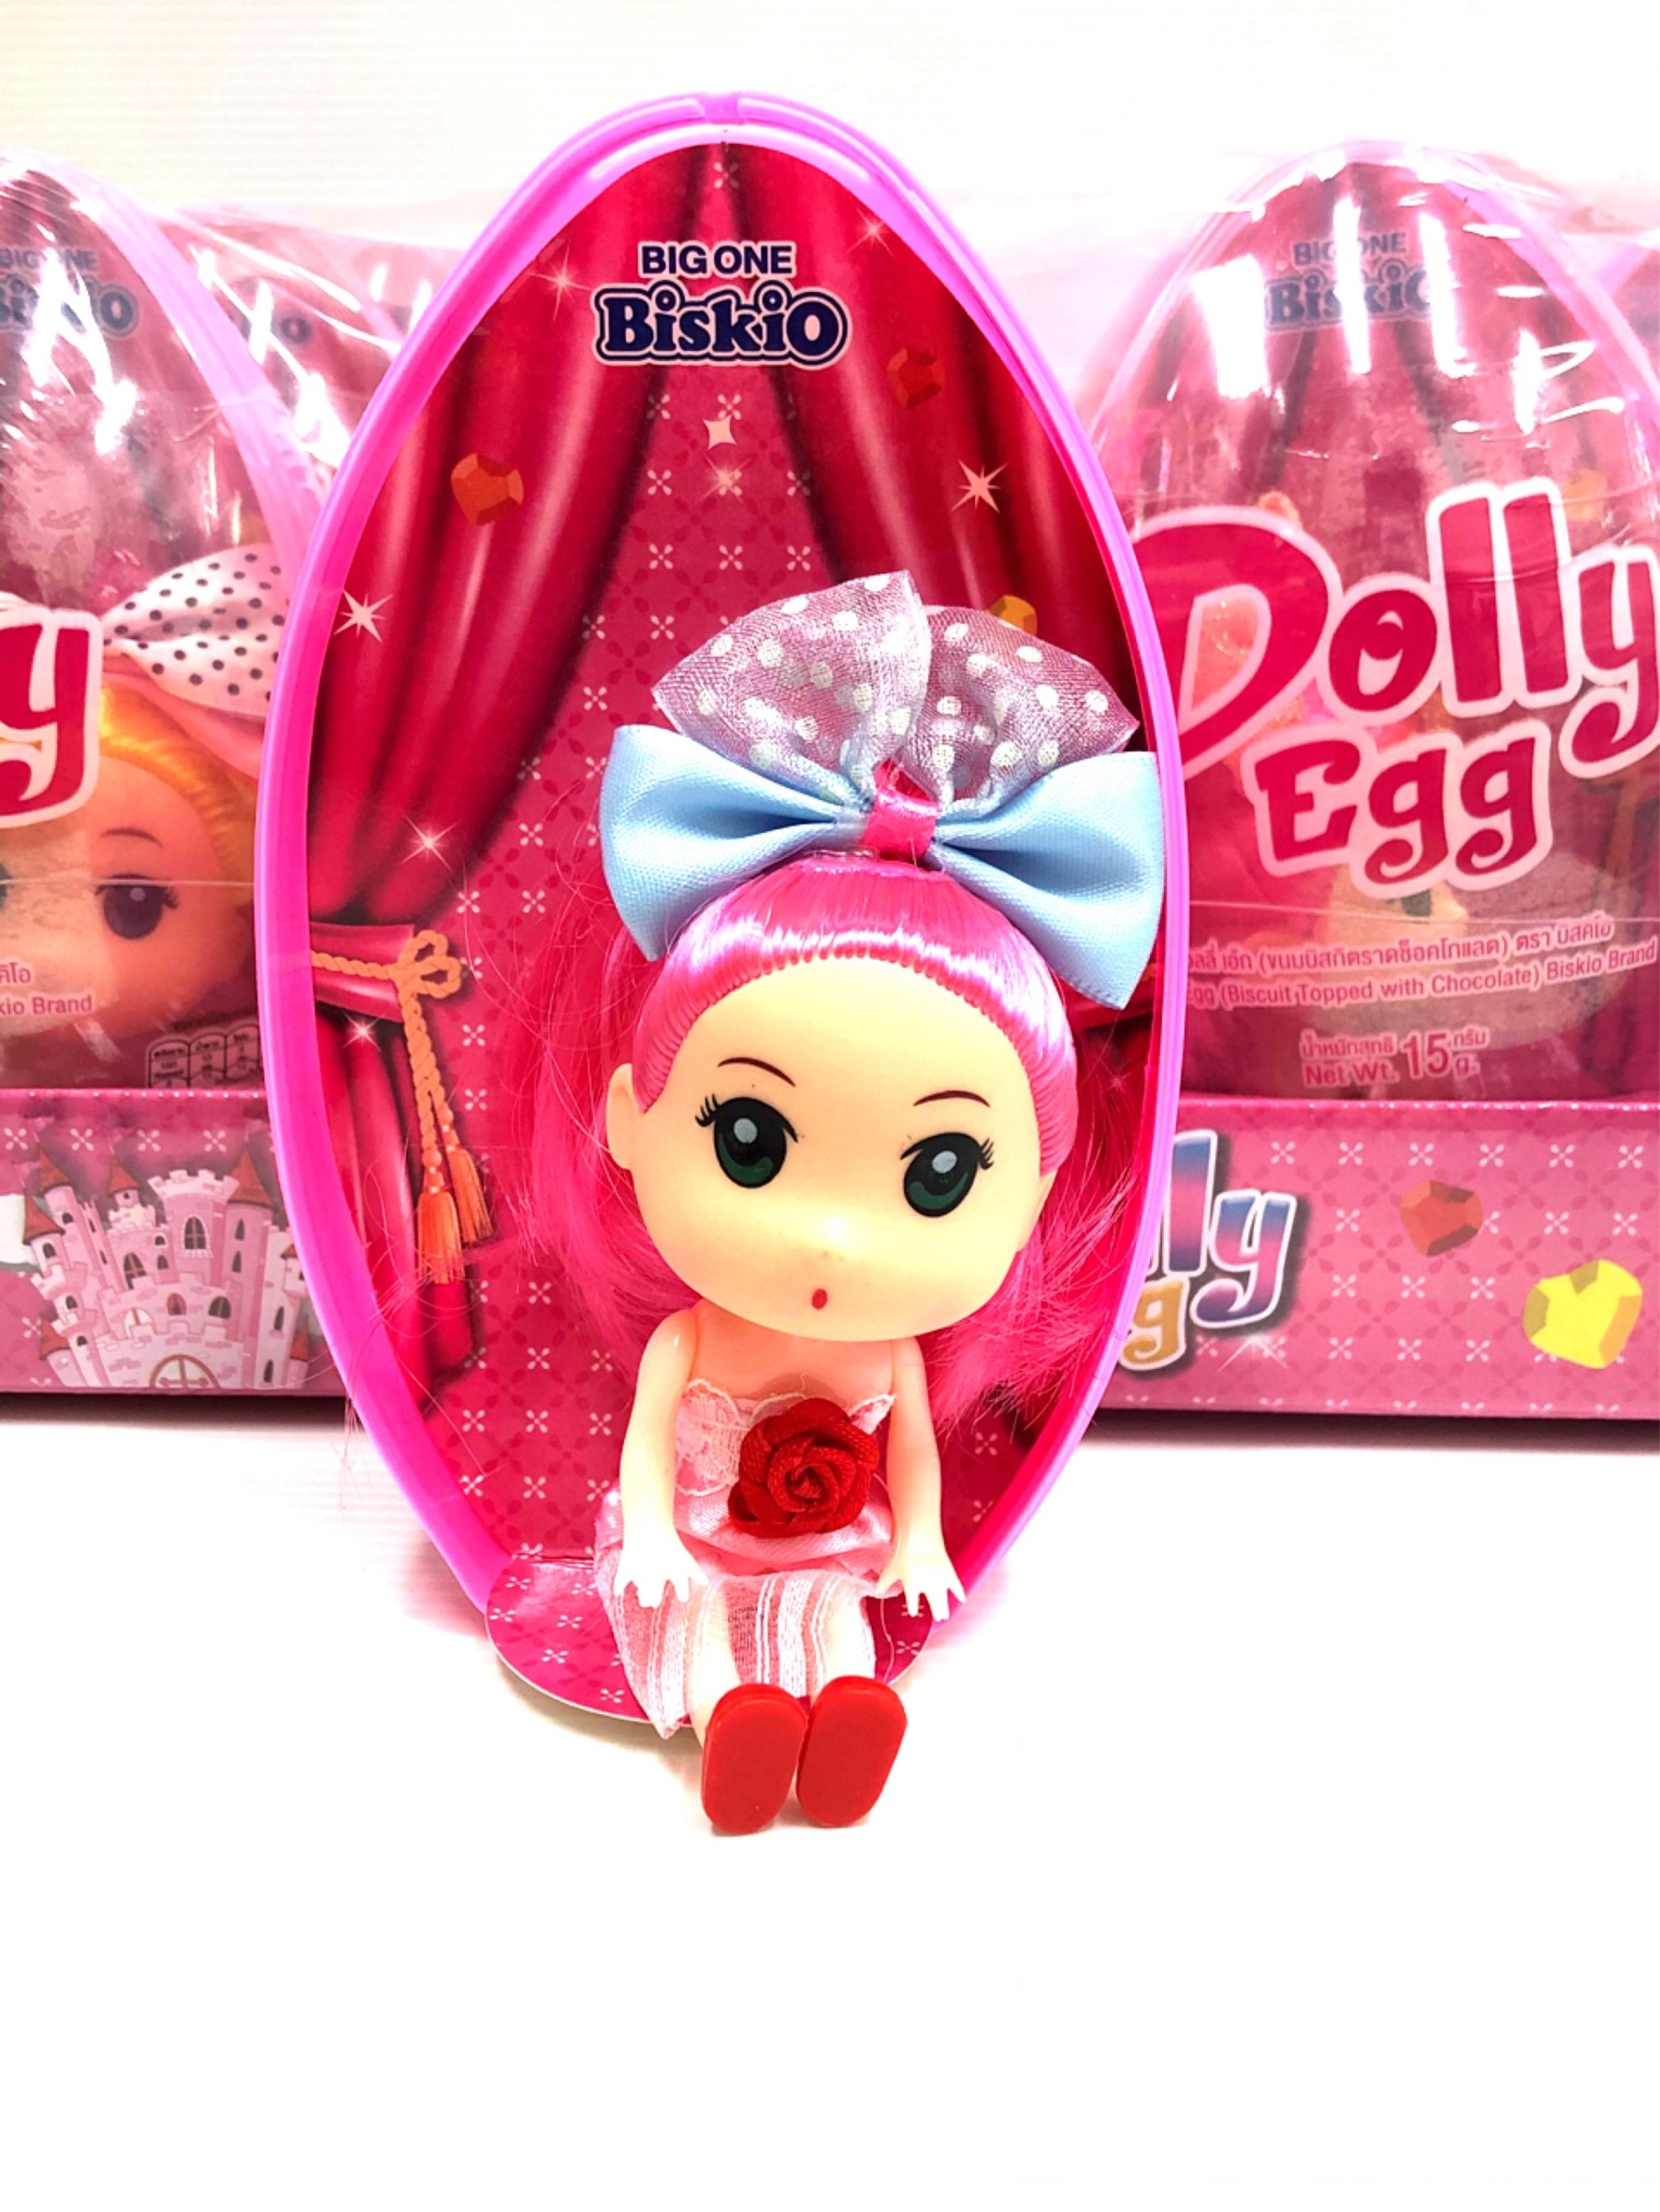 ขนมของเล่น ไข่ตุ๊กตา ไข่ดอลลี่ เอ้ก ขนมบิสกิตราดช็อกโกแลต แถมฟรีตุ๊กตาพริ้นเซส Dolly Egg